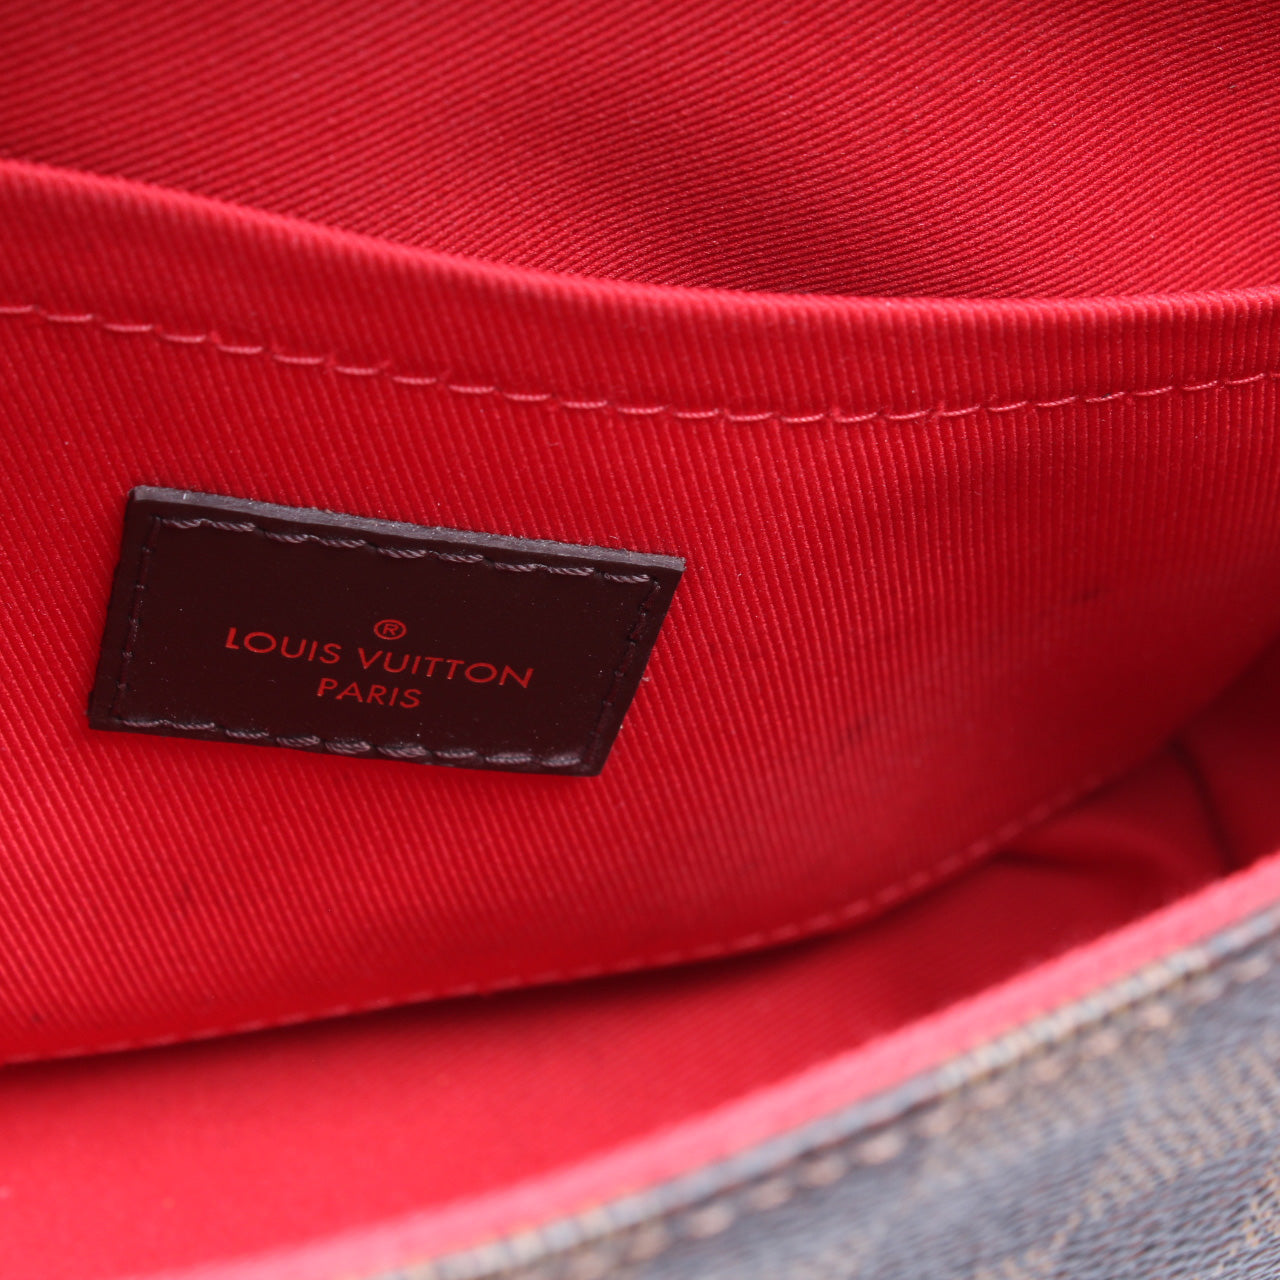 Shop Louis Vuitton Croisette by KICKSSTORE